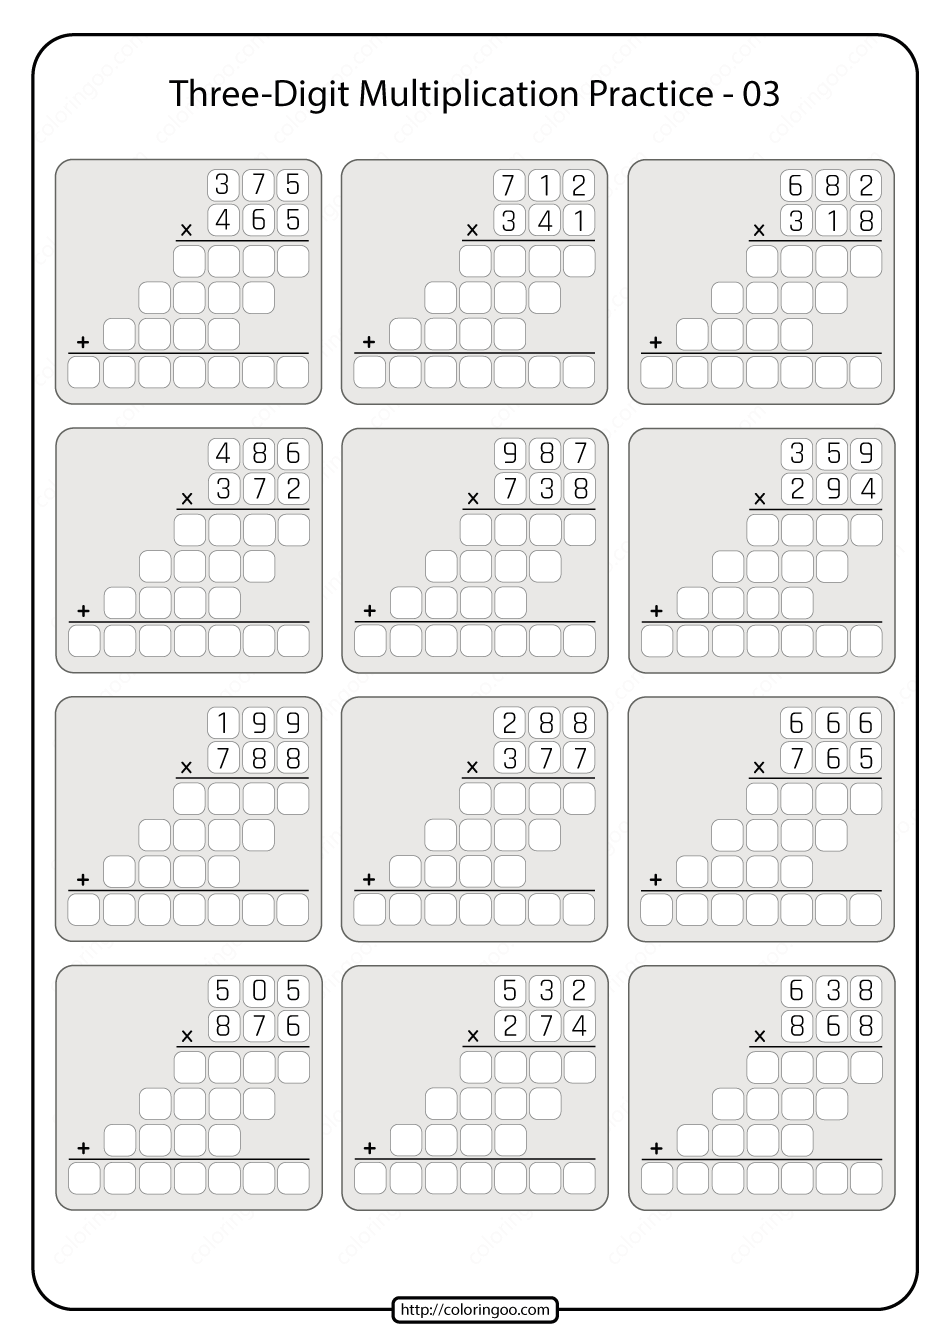 Three digit Multiplication Practice Worksheet 03